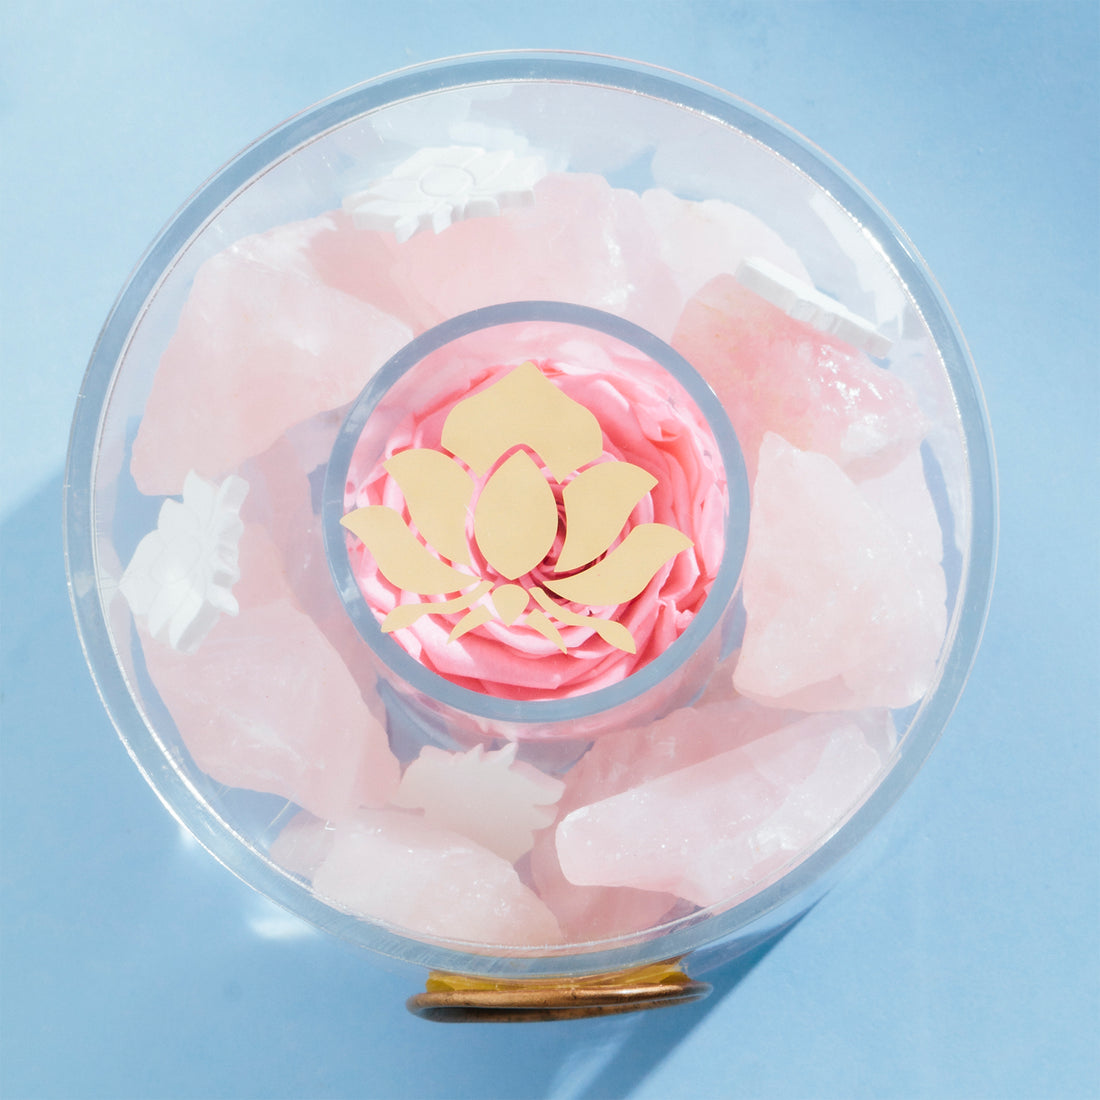 Rose Quartz Crystal Diffuser by La Fleur Lifetime Flowers